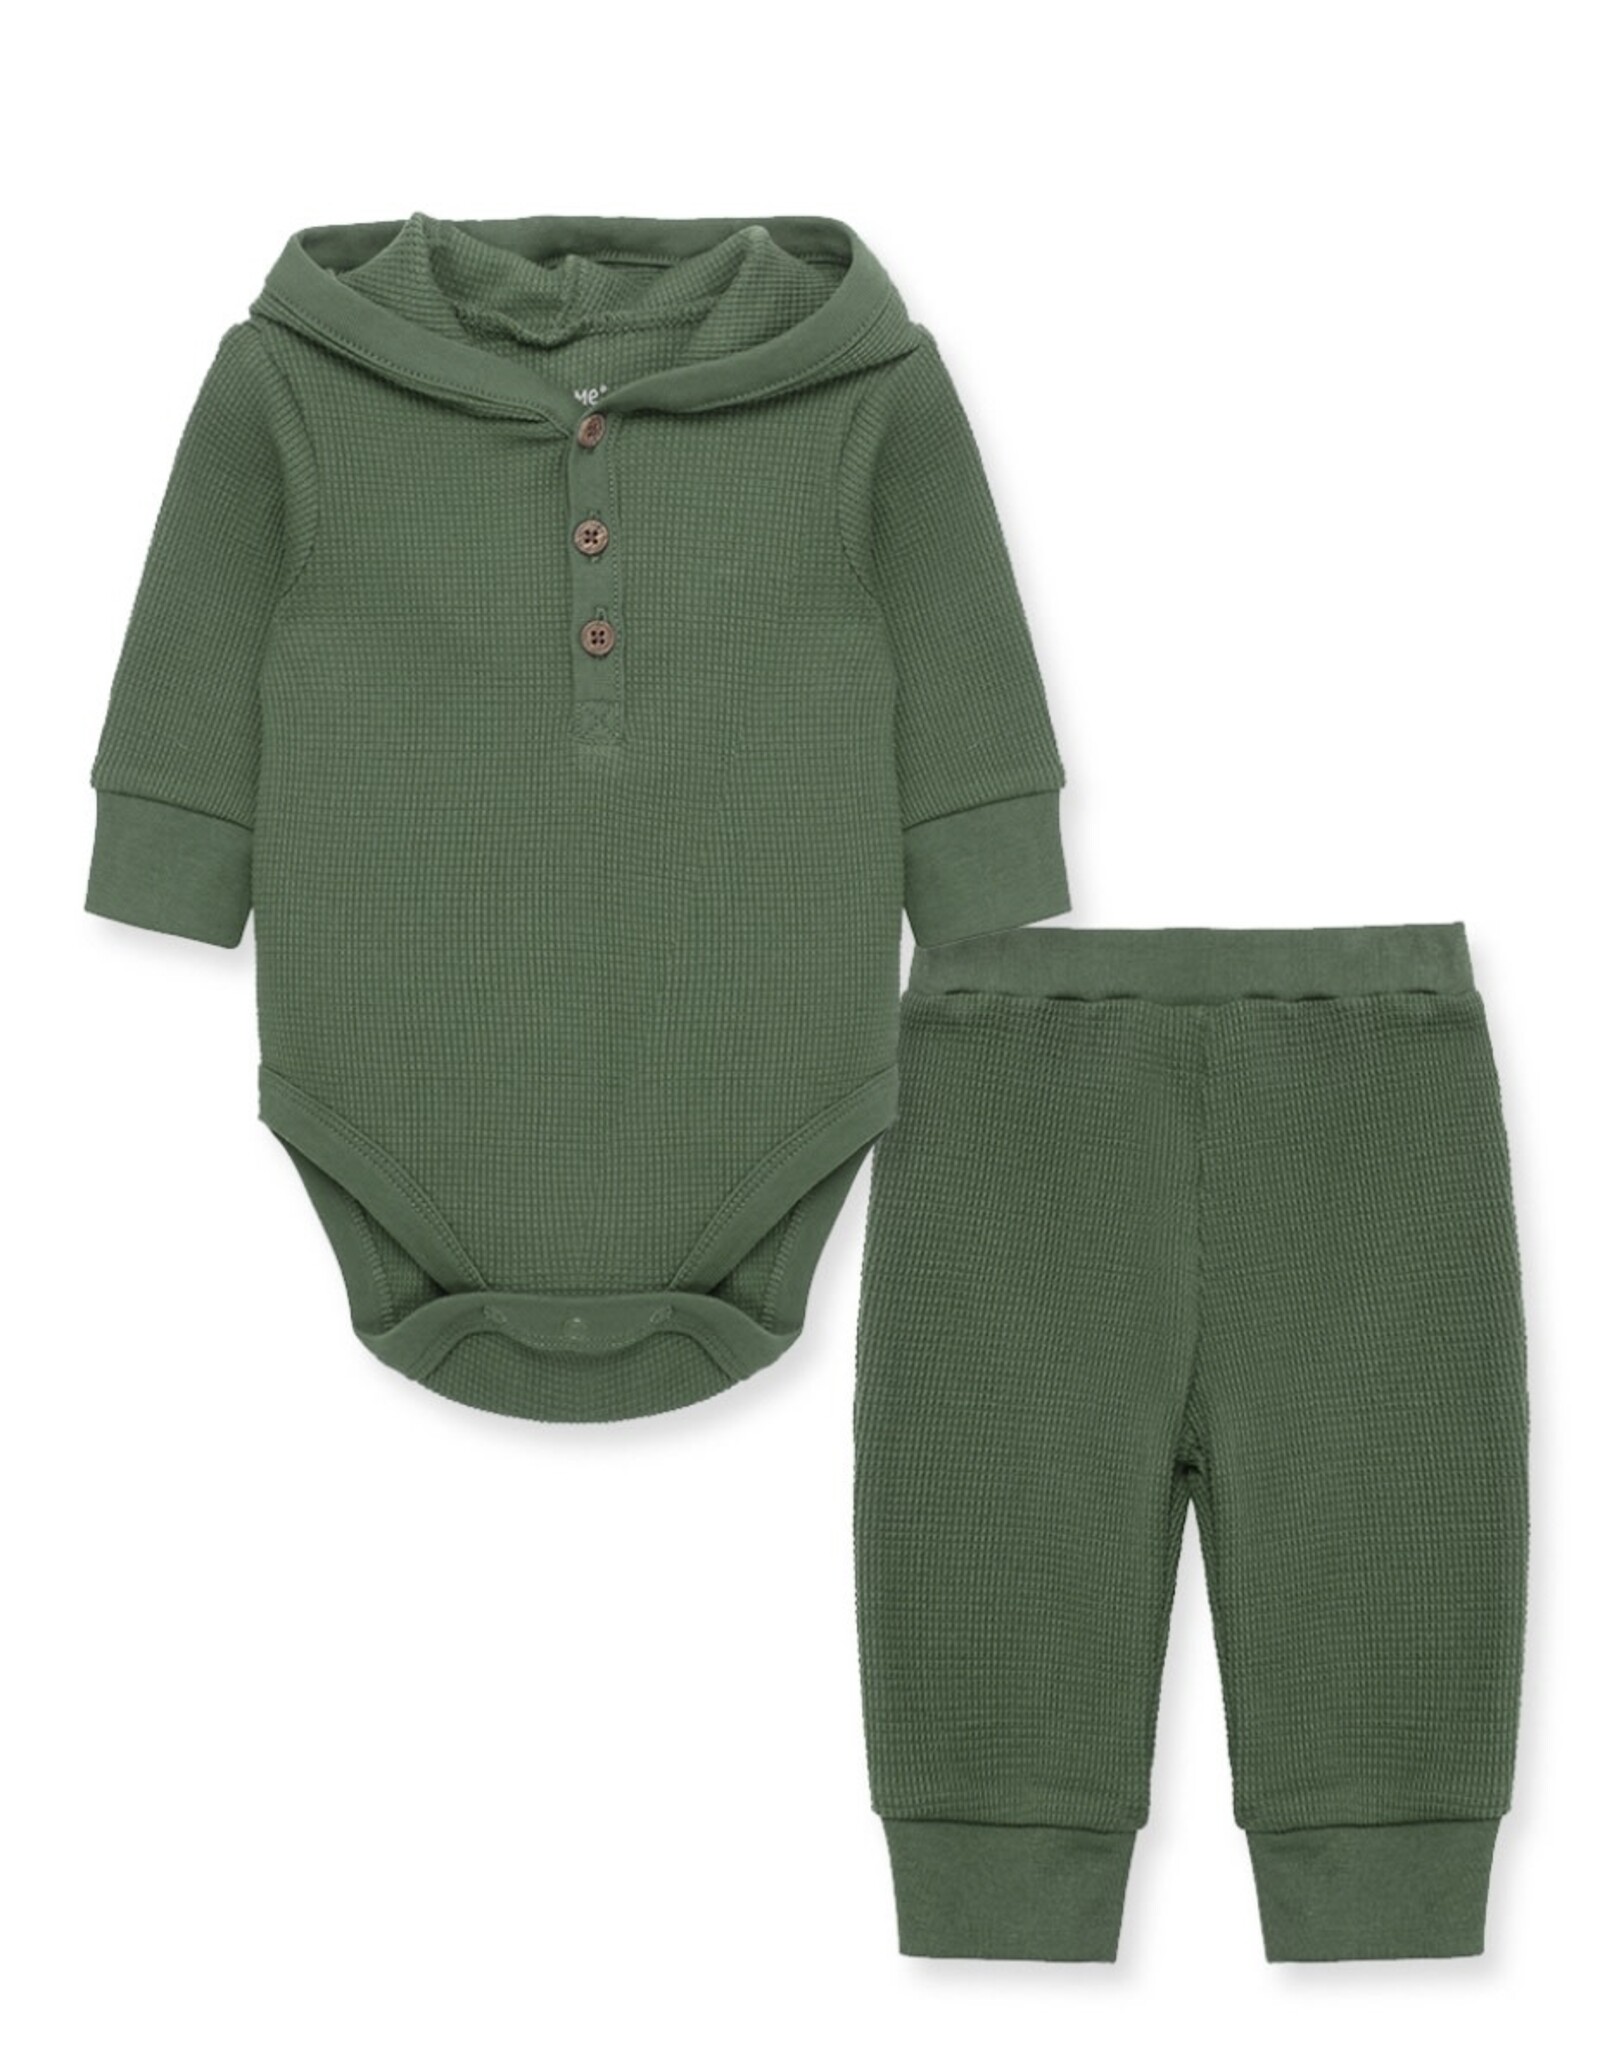 Little Me Little Me- Green Bodysuit Pant Set